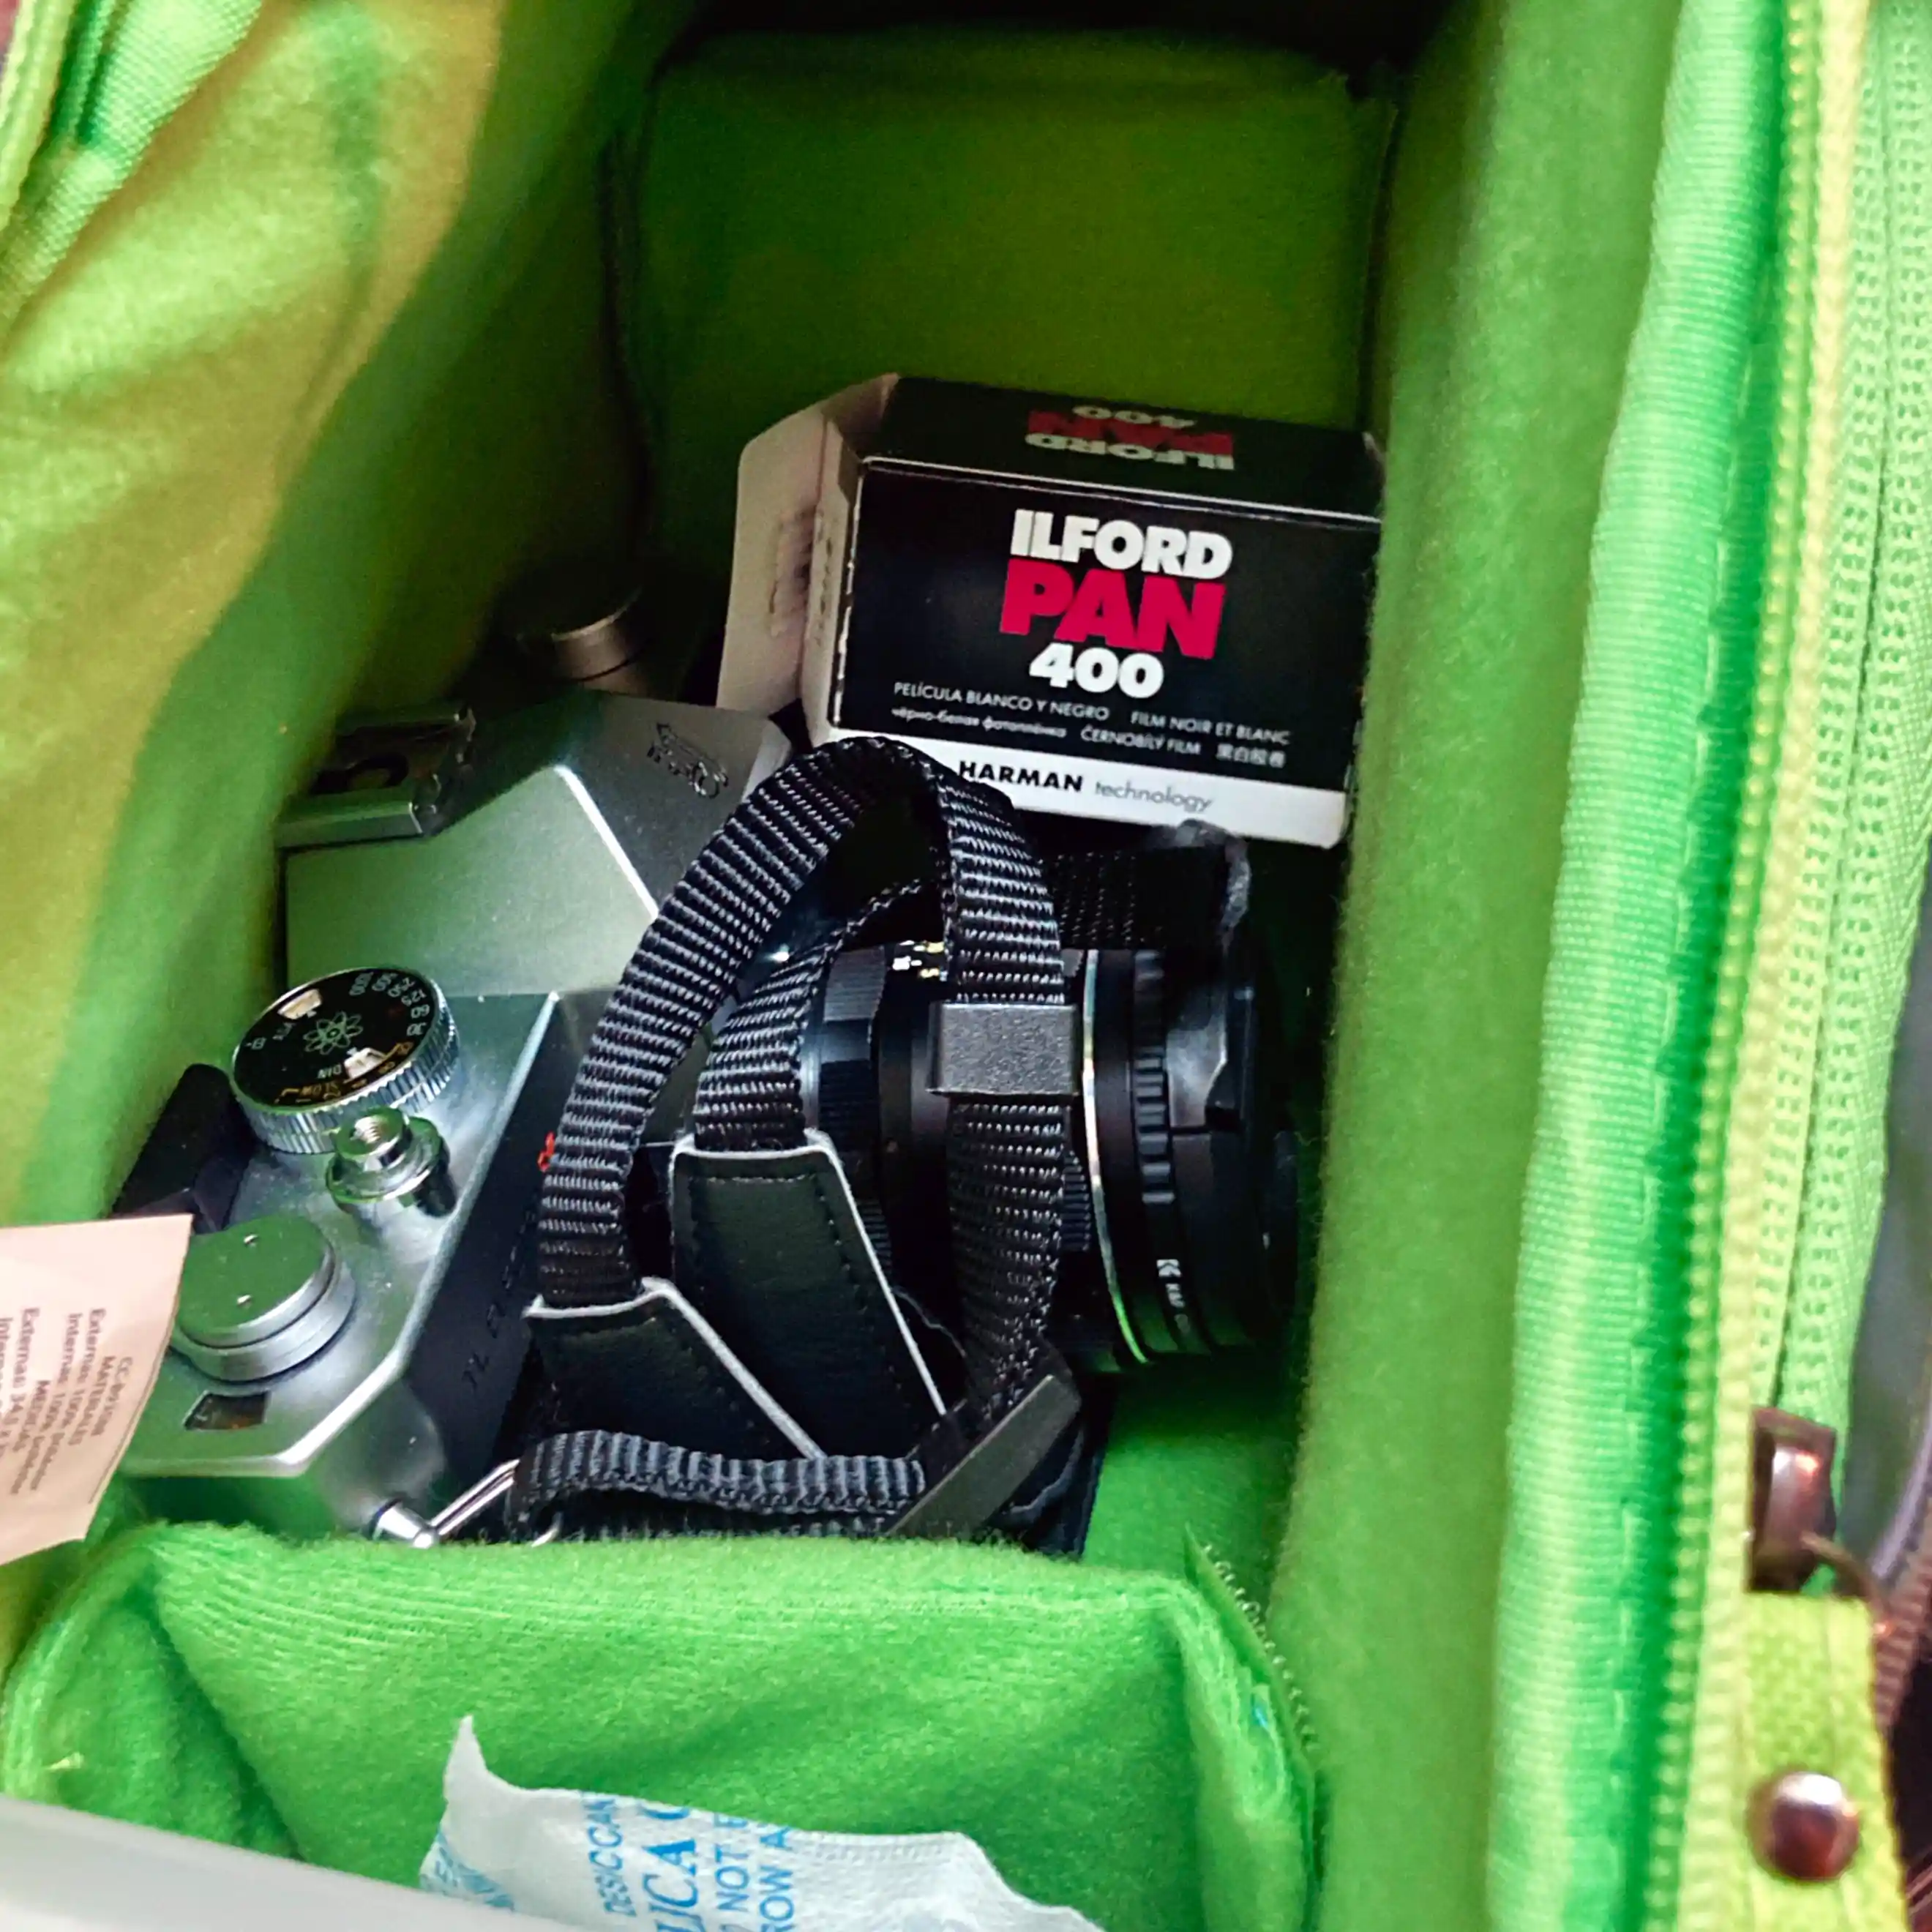 Una cámara analógica con su correa envuelta sobre ella dentro de una mochila fotográfica. Al fondo se observa una caja de película Ilford